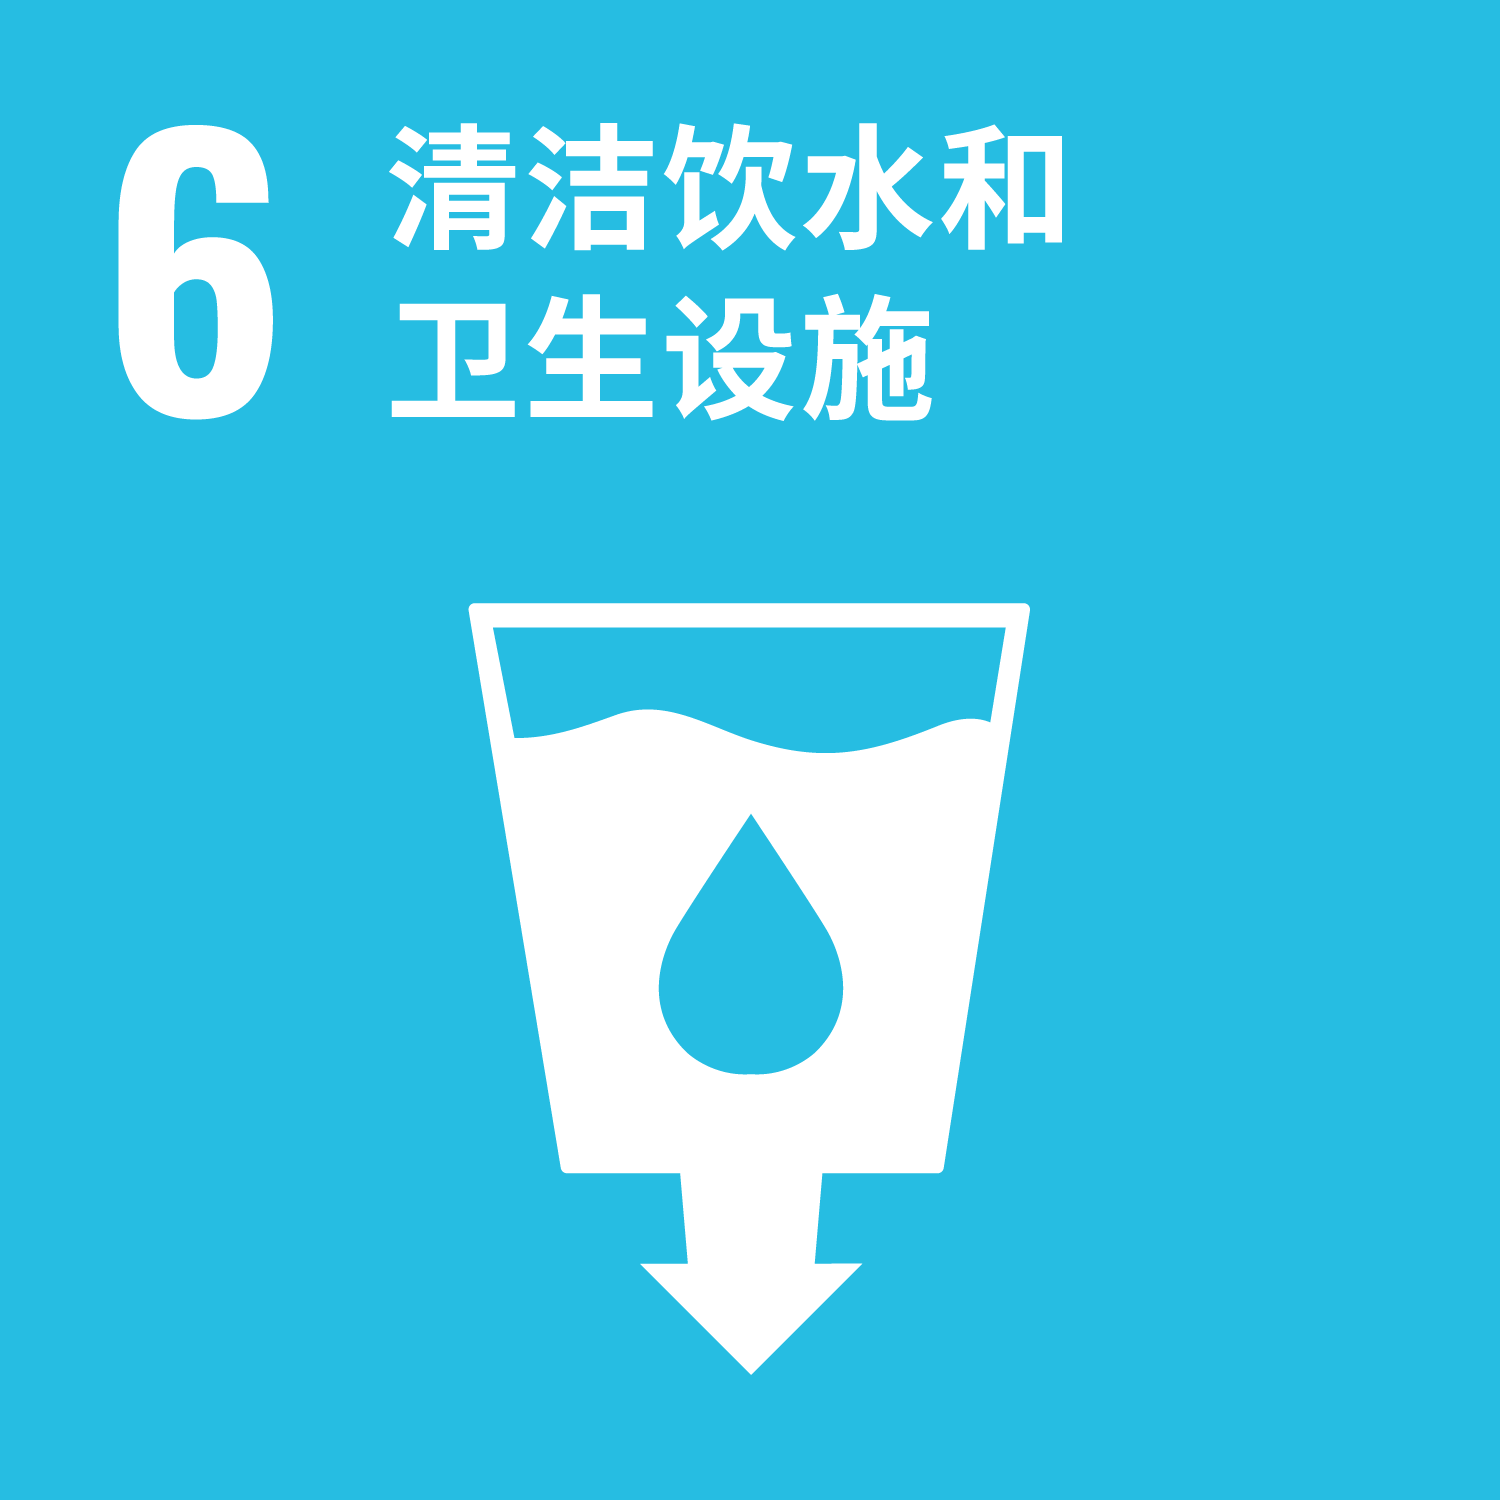 #6 清洁饮水和卫生设施